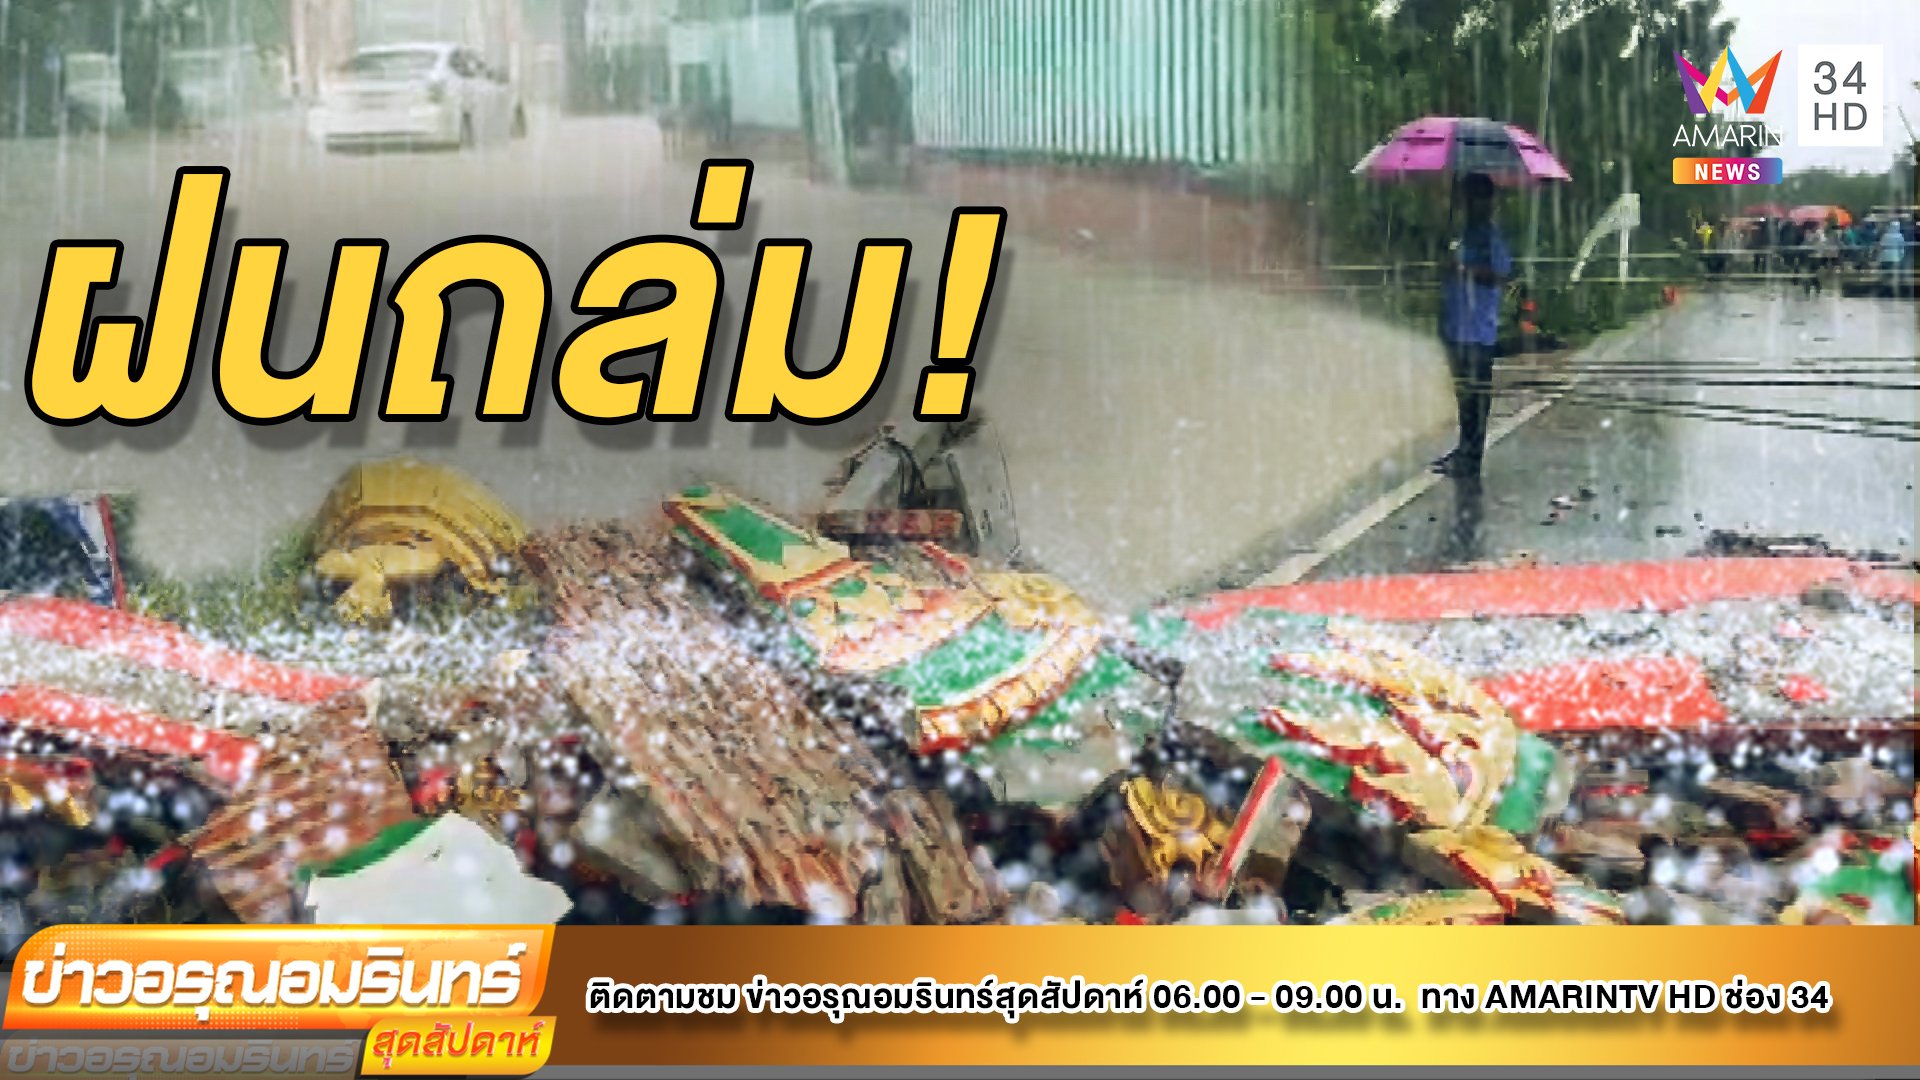 “เจิมปากา” ออกฤทธิ์ ฝนถล่มบ้านพัง-เสาล้มหลายจุด  | ข่าวอรุณอมรินทร์ | 25 ก.ค. 64 | AMARIN TVHD34